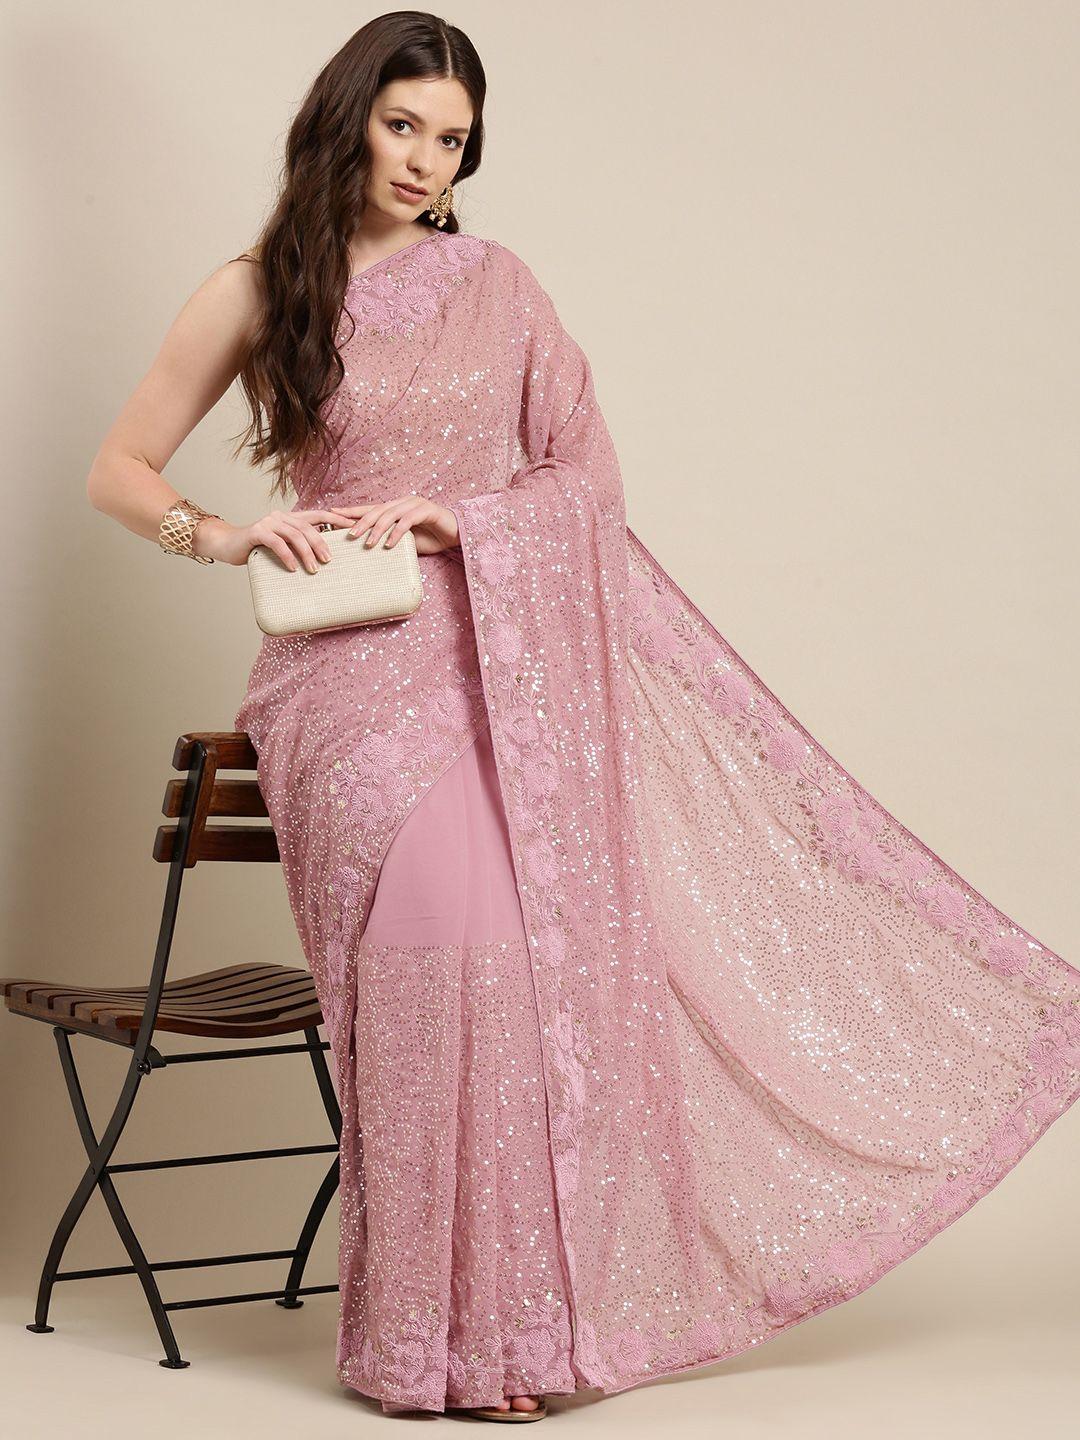 sugathari pink embellished sequinned saree